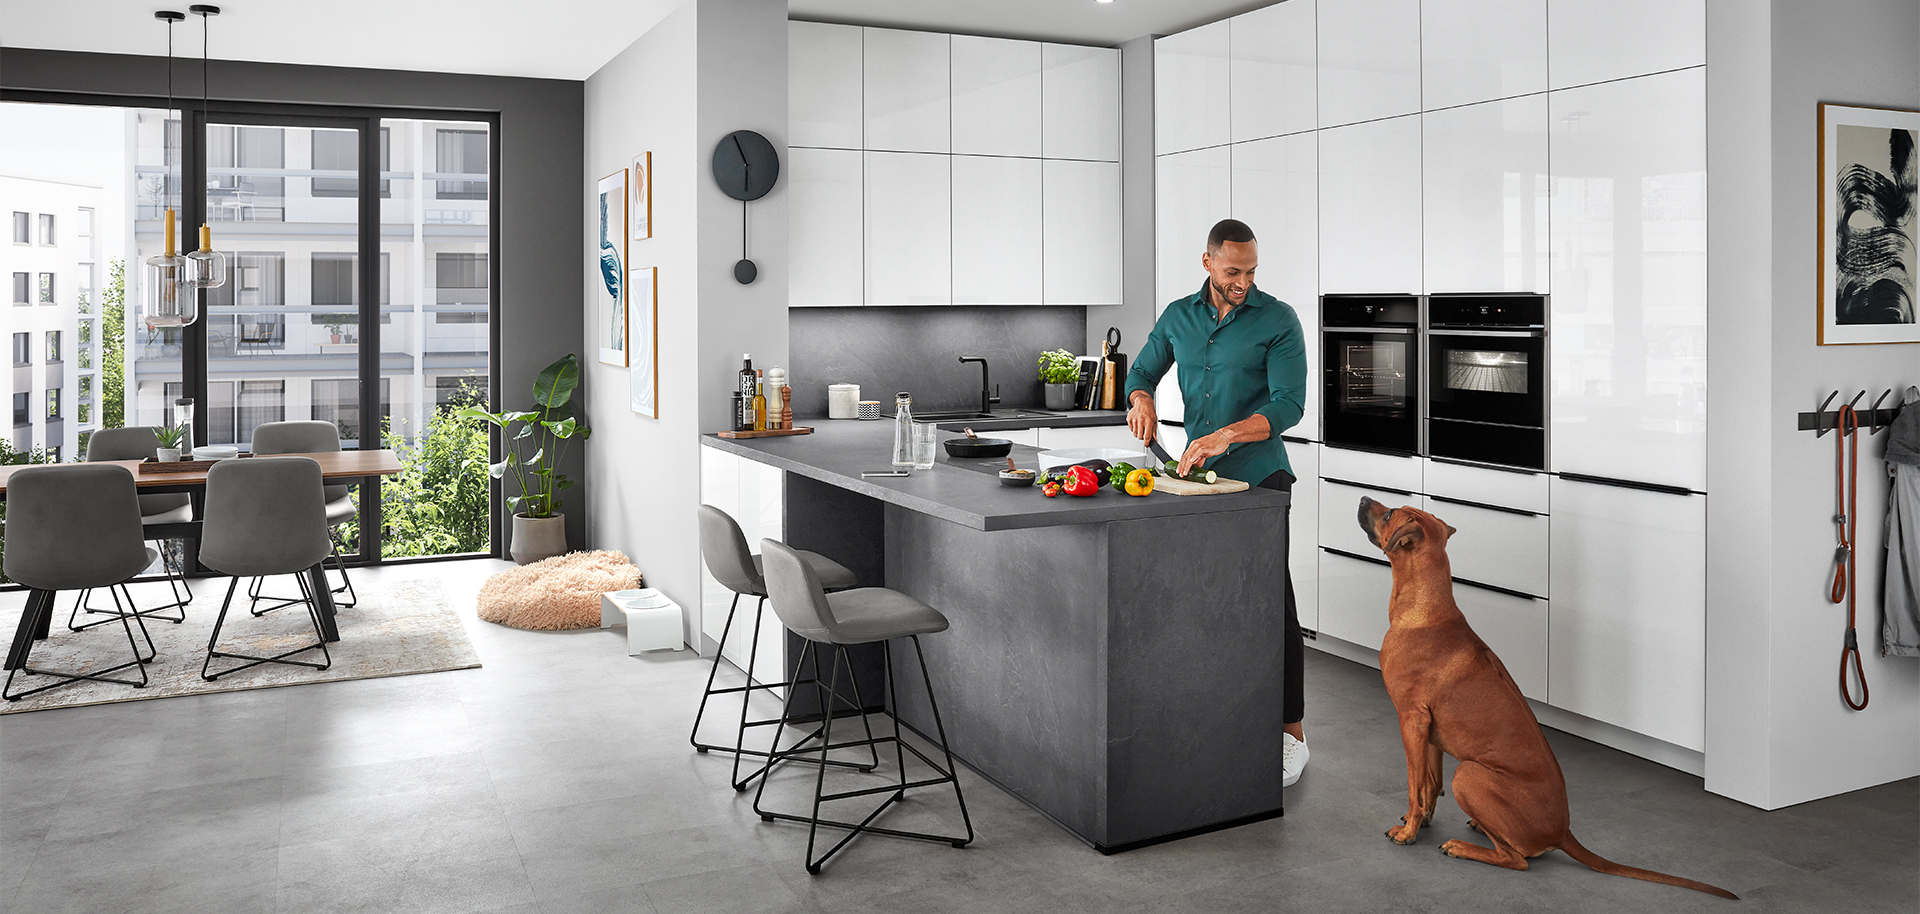 Une scène de cuisine moderne et élégante mettant en scène un homme préparant de la nourriture sur un comptoir d'îlot avec un chien qui regarde, reflétant un style de vie domestique confortable et contemporain.